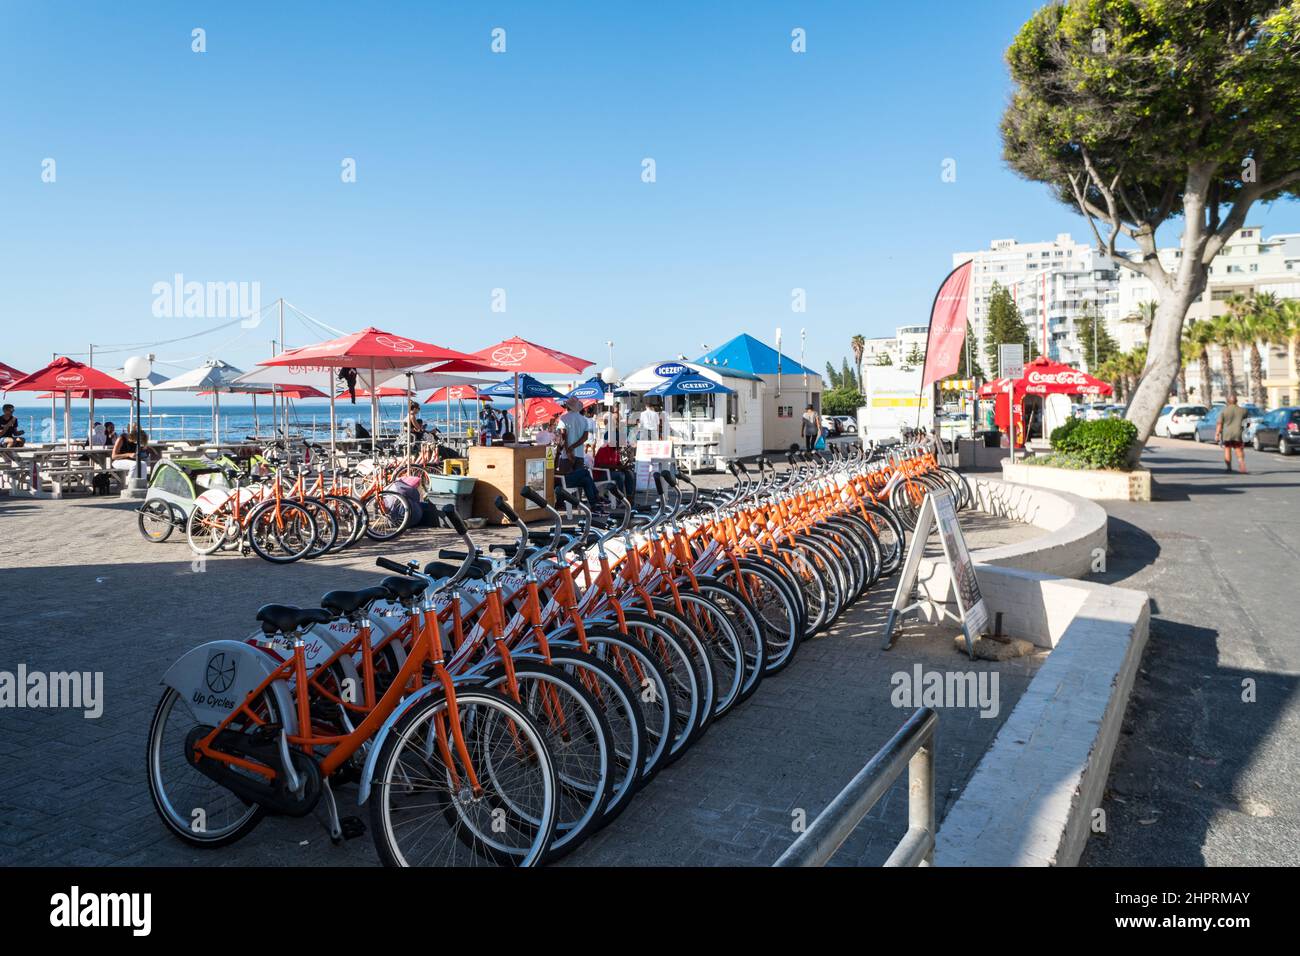 Location de vélos, louer un vélo, une rangée de cycles alignés sur une route en bord de mer à Sea point, le Cap, l'Afrique du Sud concept d'activités de loisirs ou de loisirs Banque D'Images